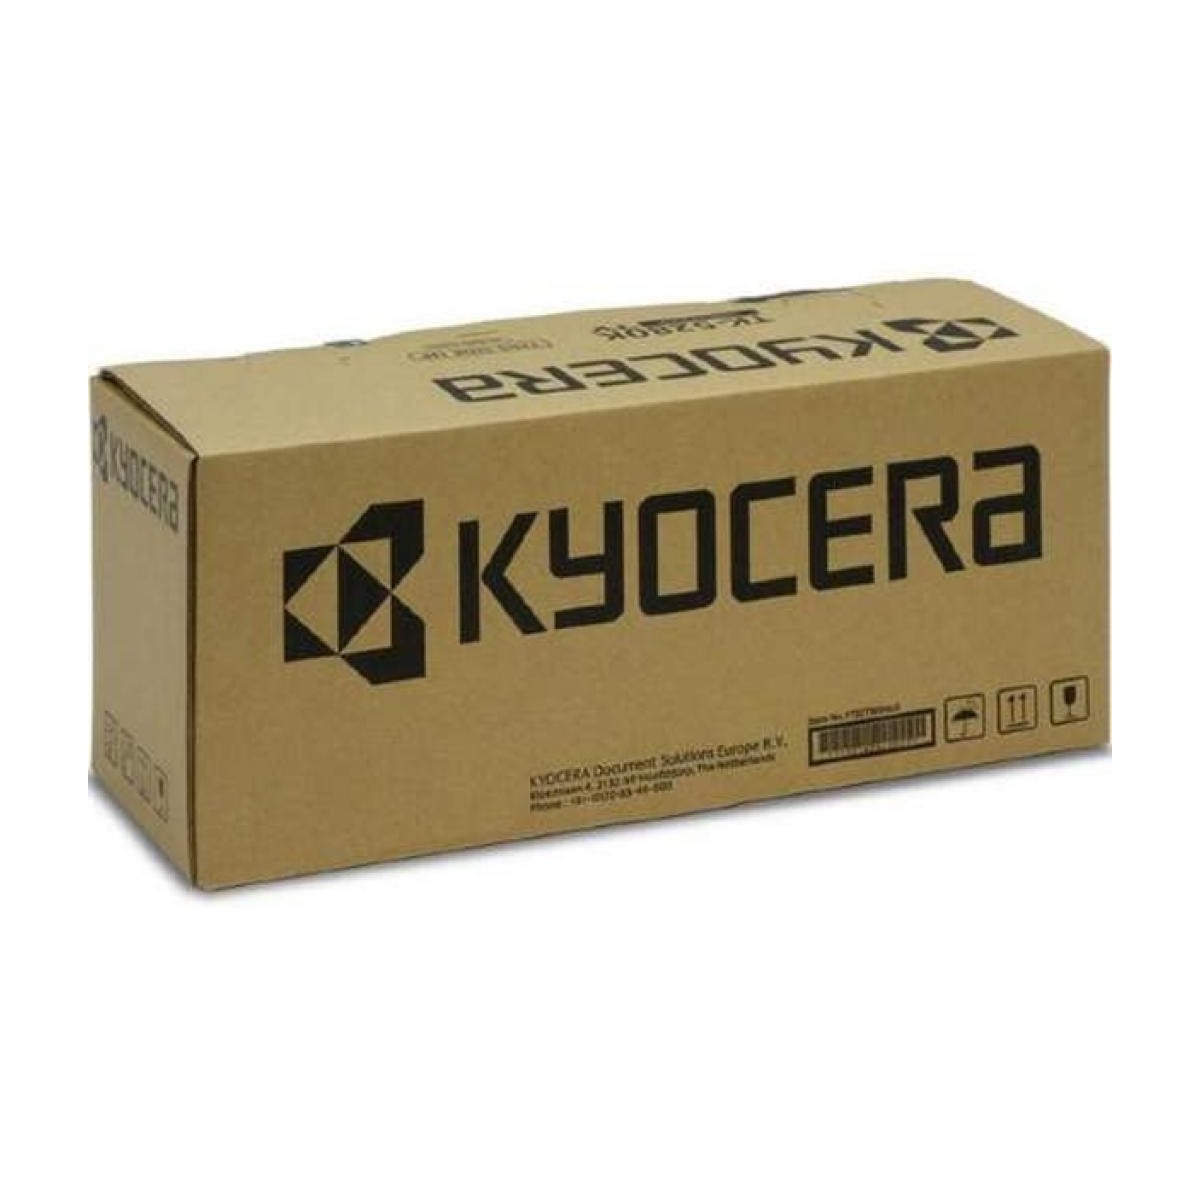 Kyocera FK-5205 - Laser - 300000 pages - Kyocera - TASKalfa 306ci - TASKalfa 356ci - TASKalfa 406ci - 1 pc(s)